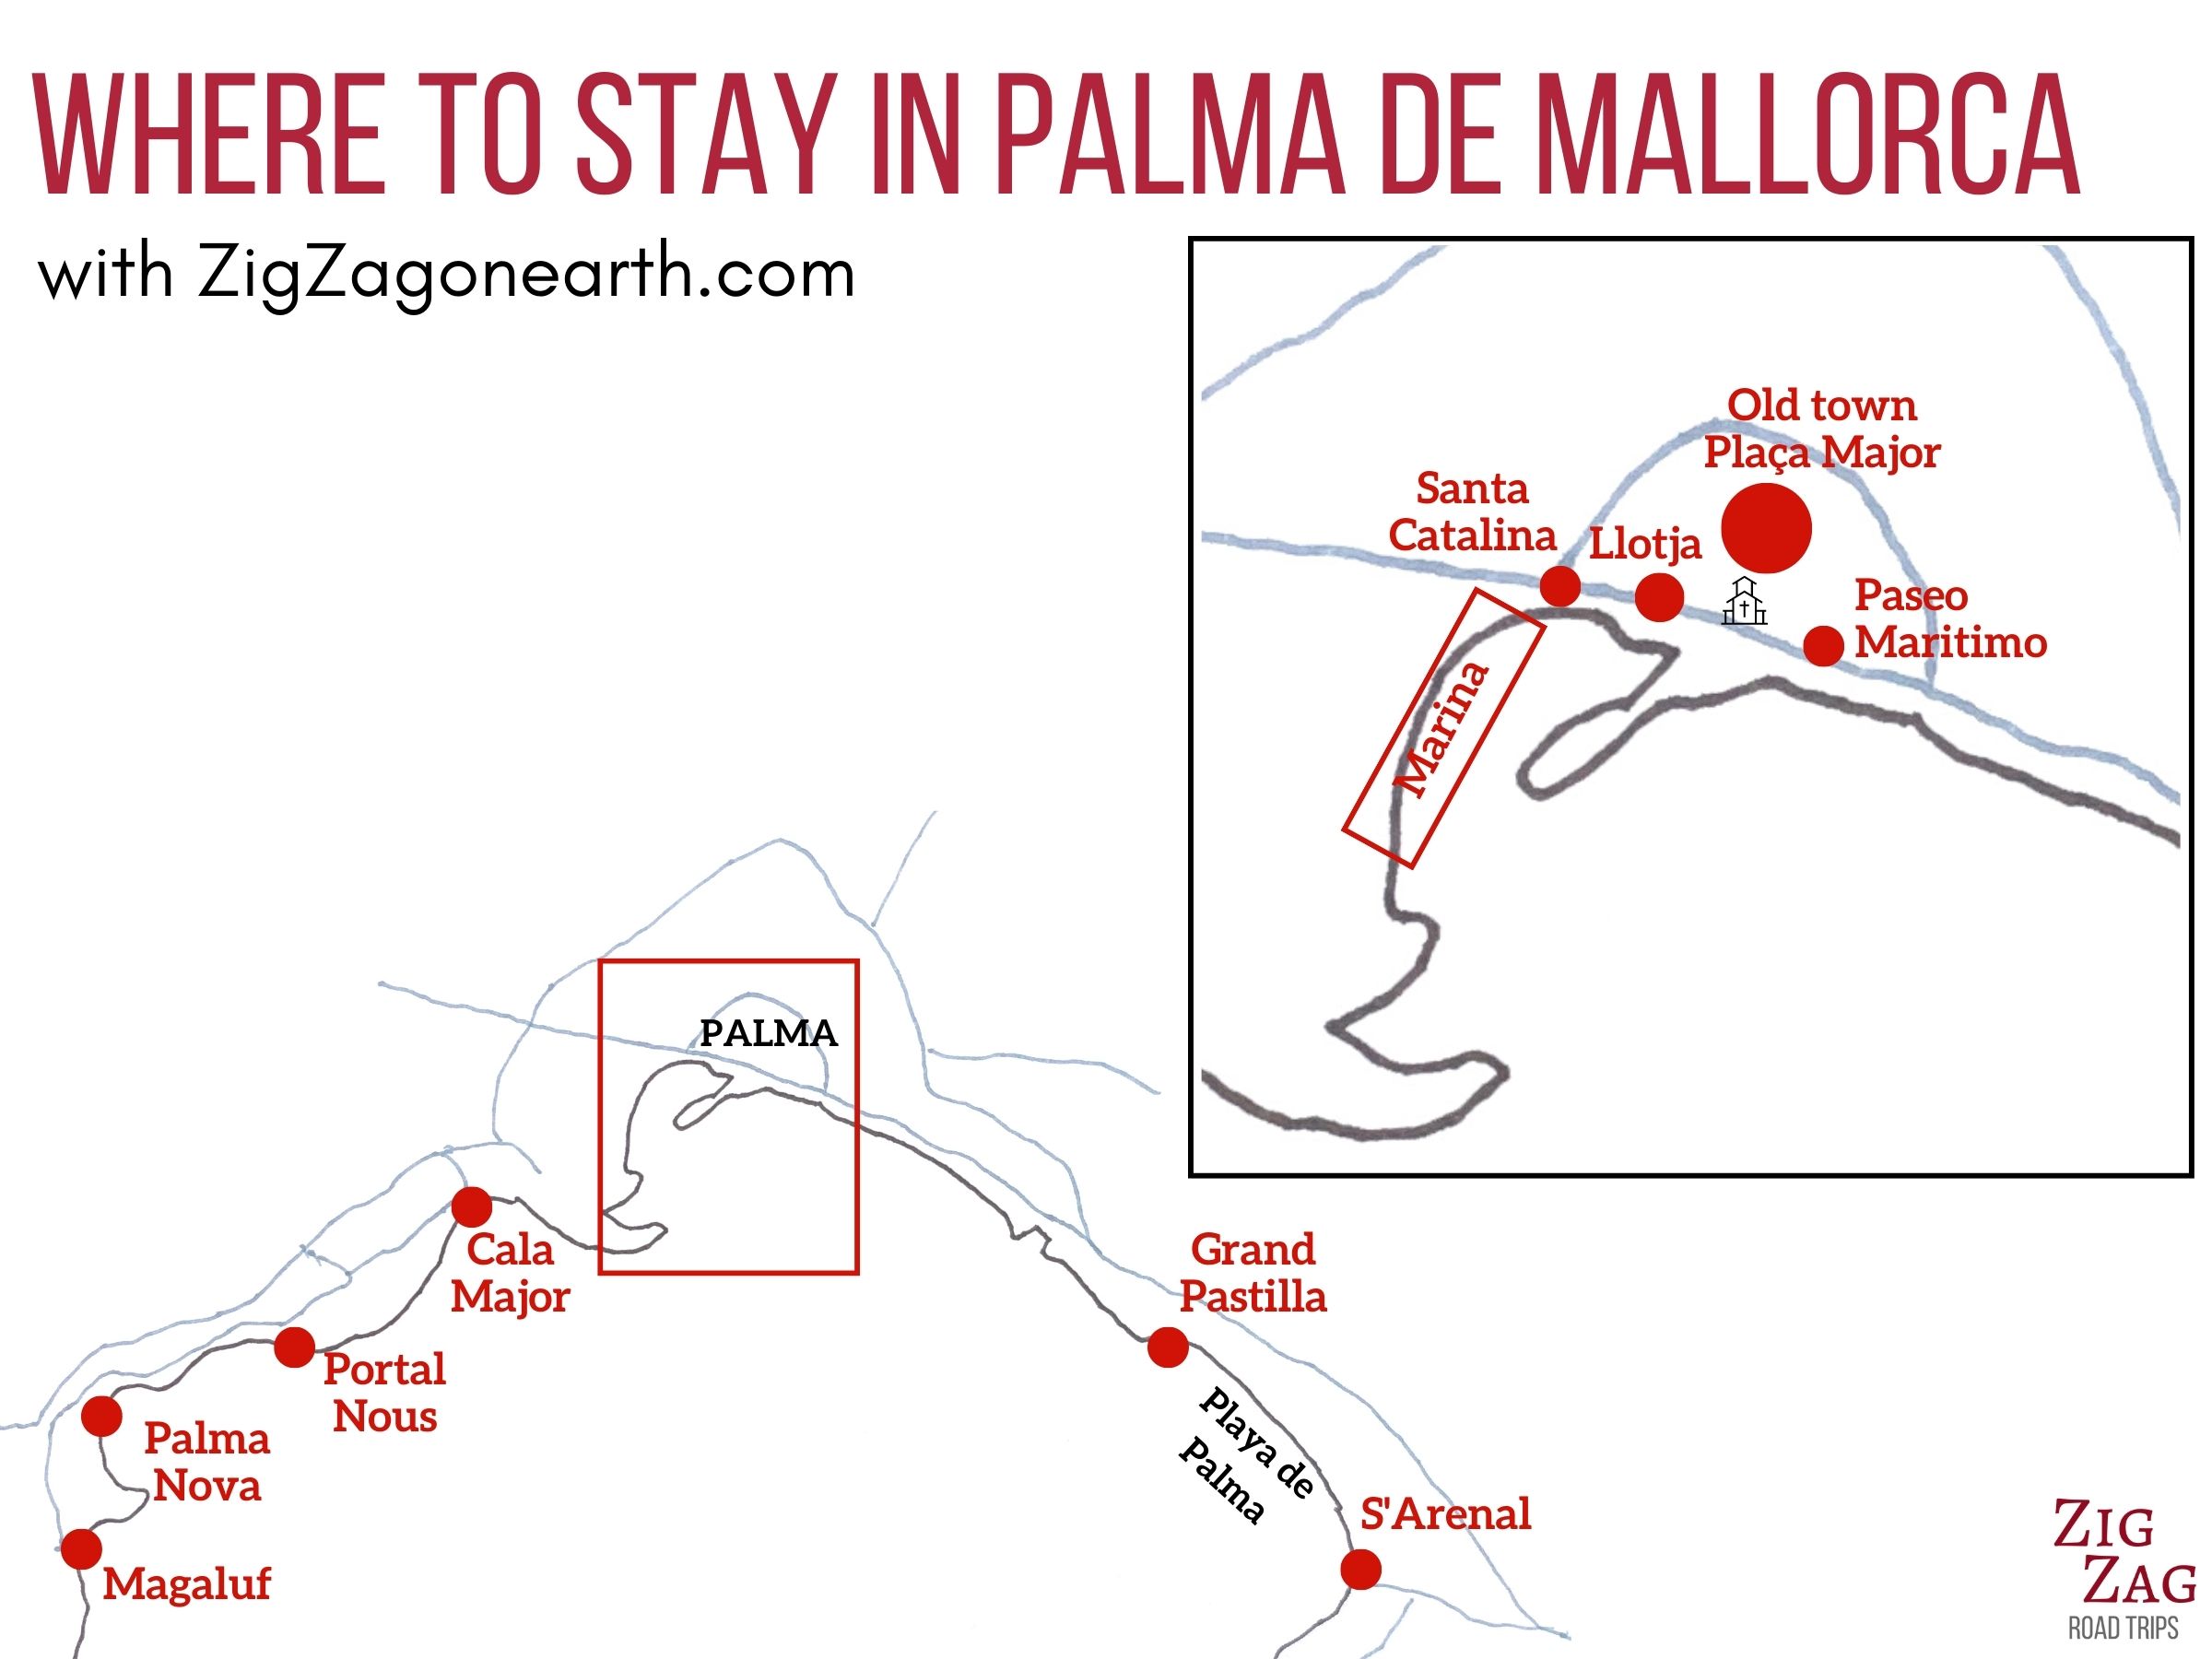 Kort - de bedste områder at bo i Palma de Mallorca